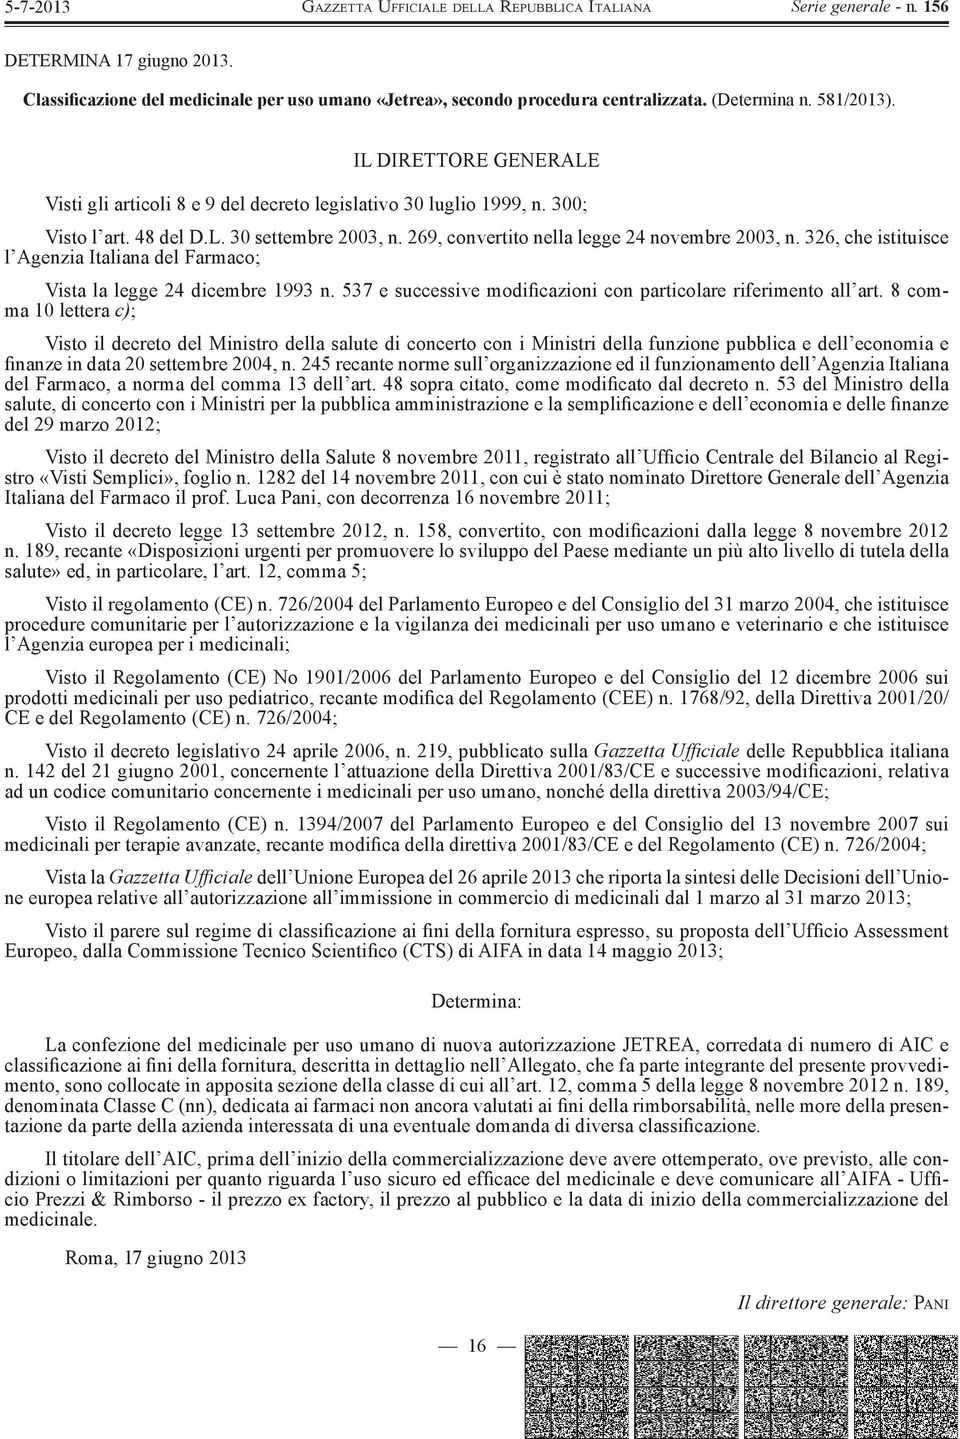 326, che istituisce l Agenzia Italiana del Farmaco; Vista la legge 24 dicembre 1993 n. 537 e successive modificazioni con particolare riferimento all art.